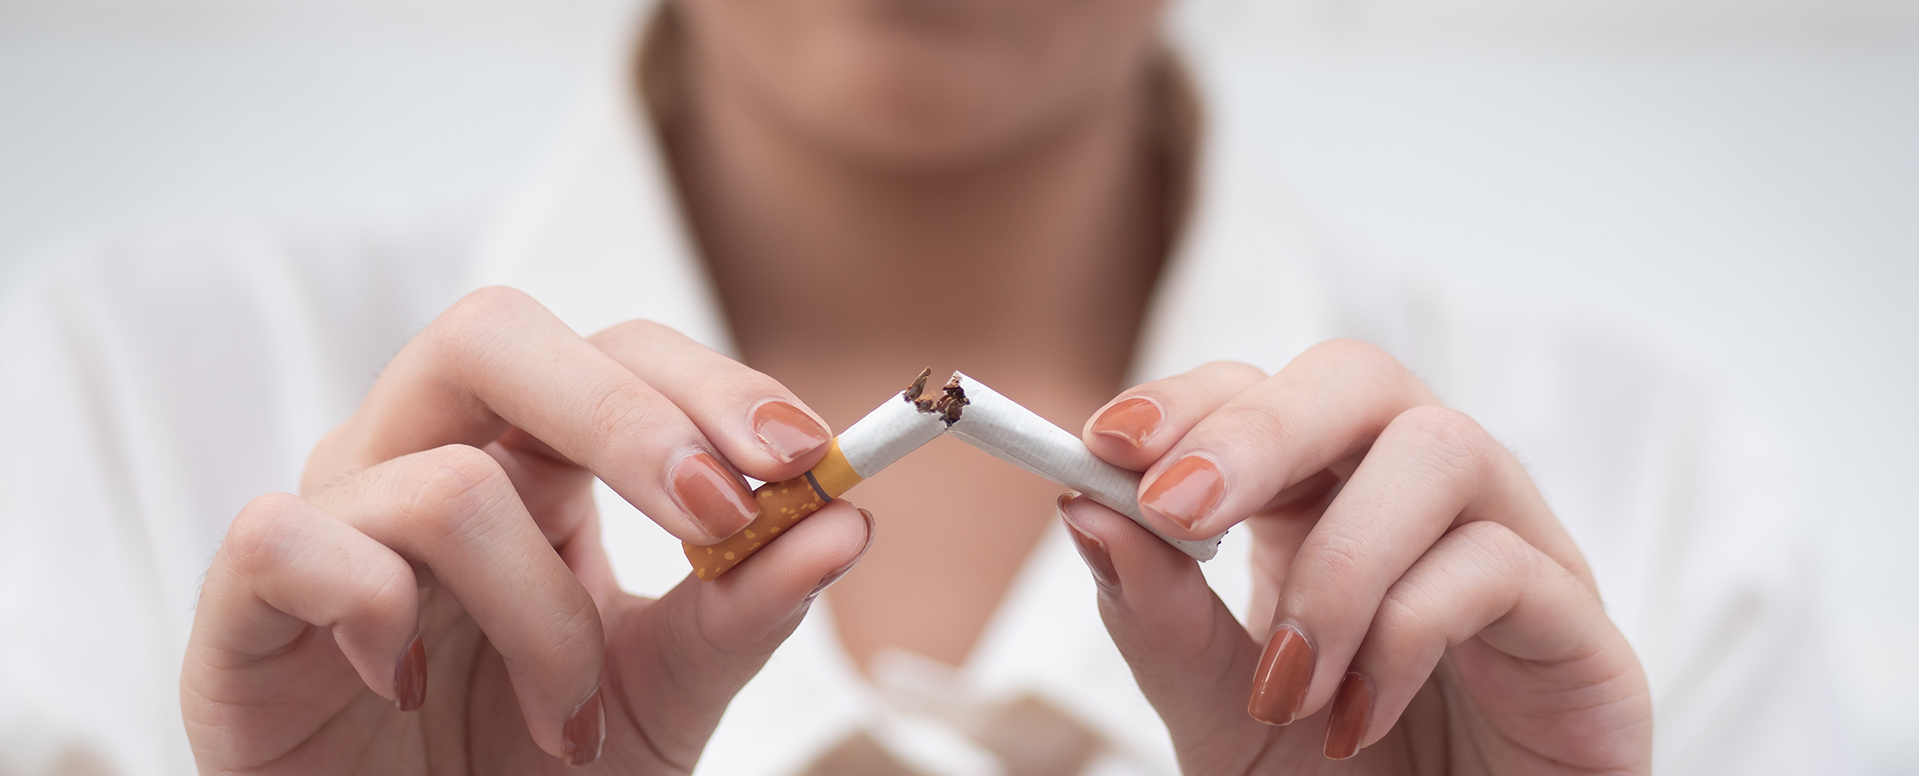 Frauenhände beim Durchbrechen einer Zigarette